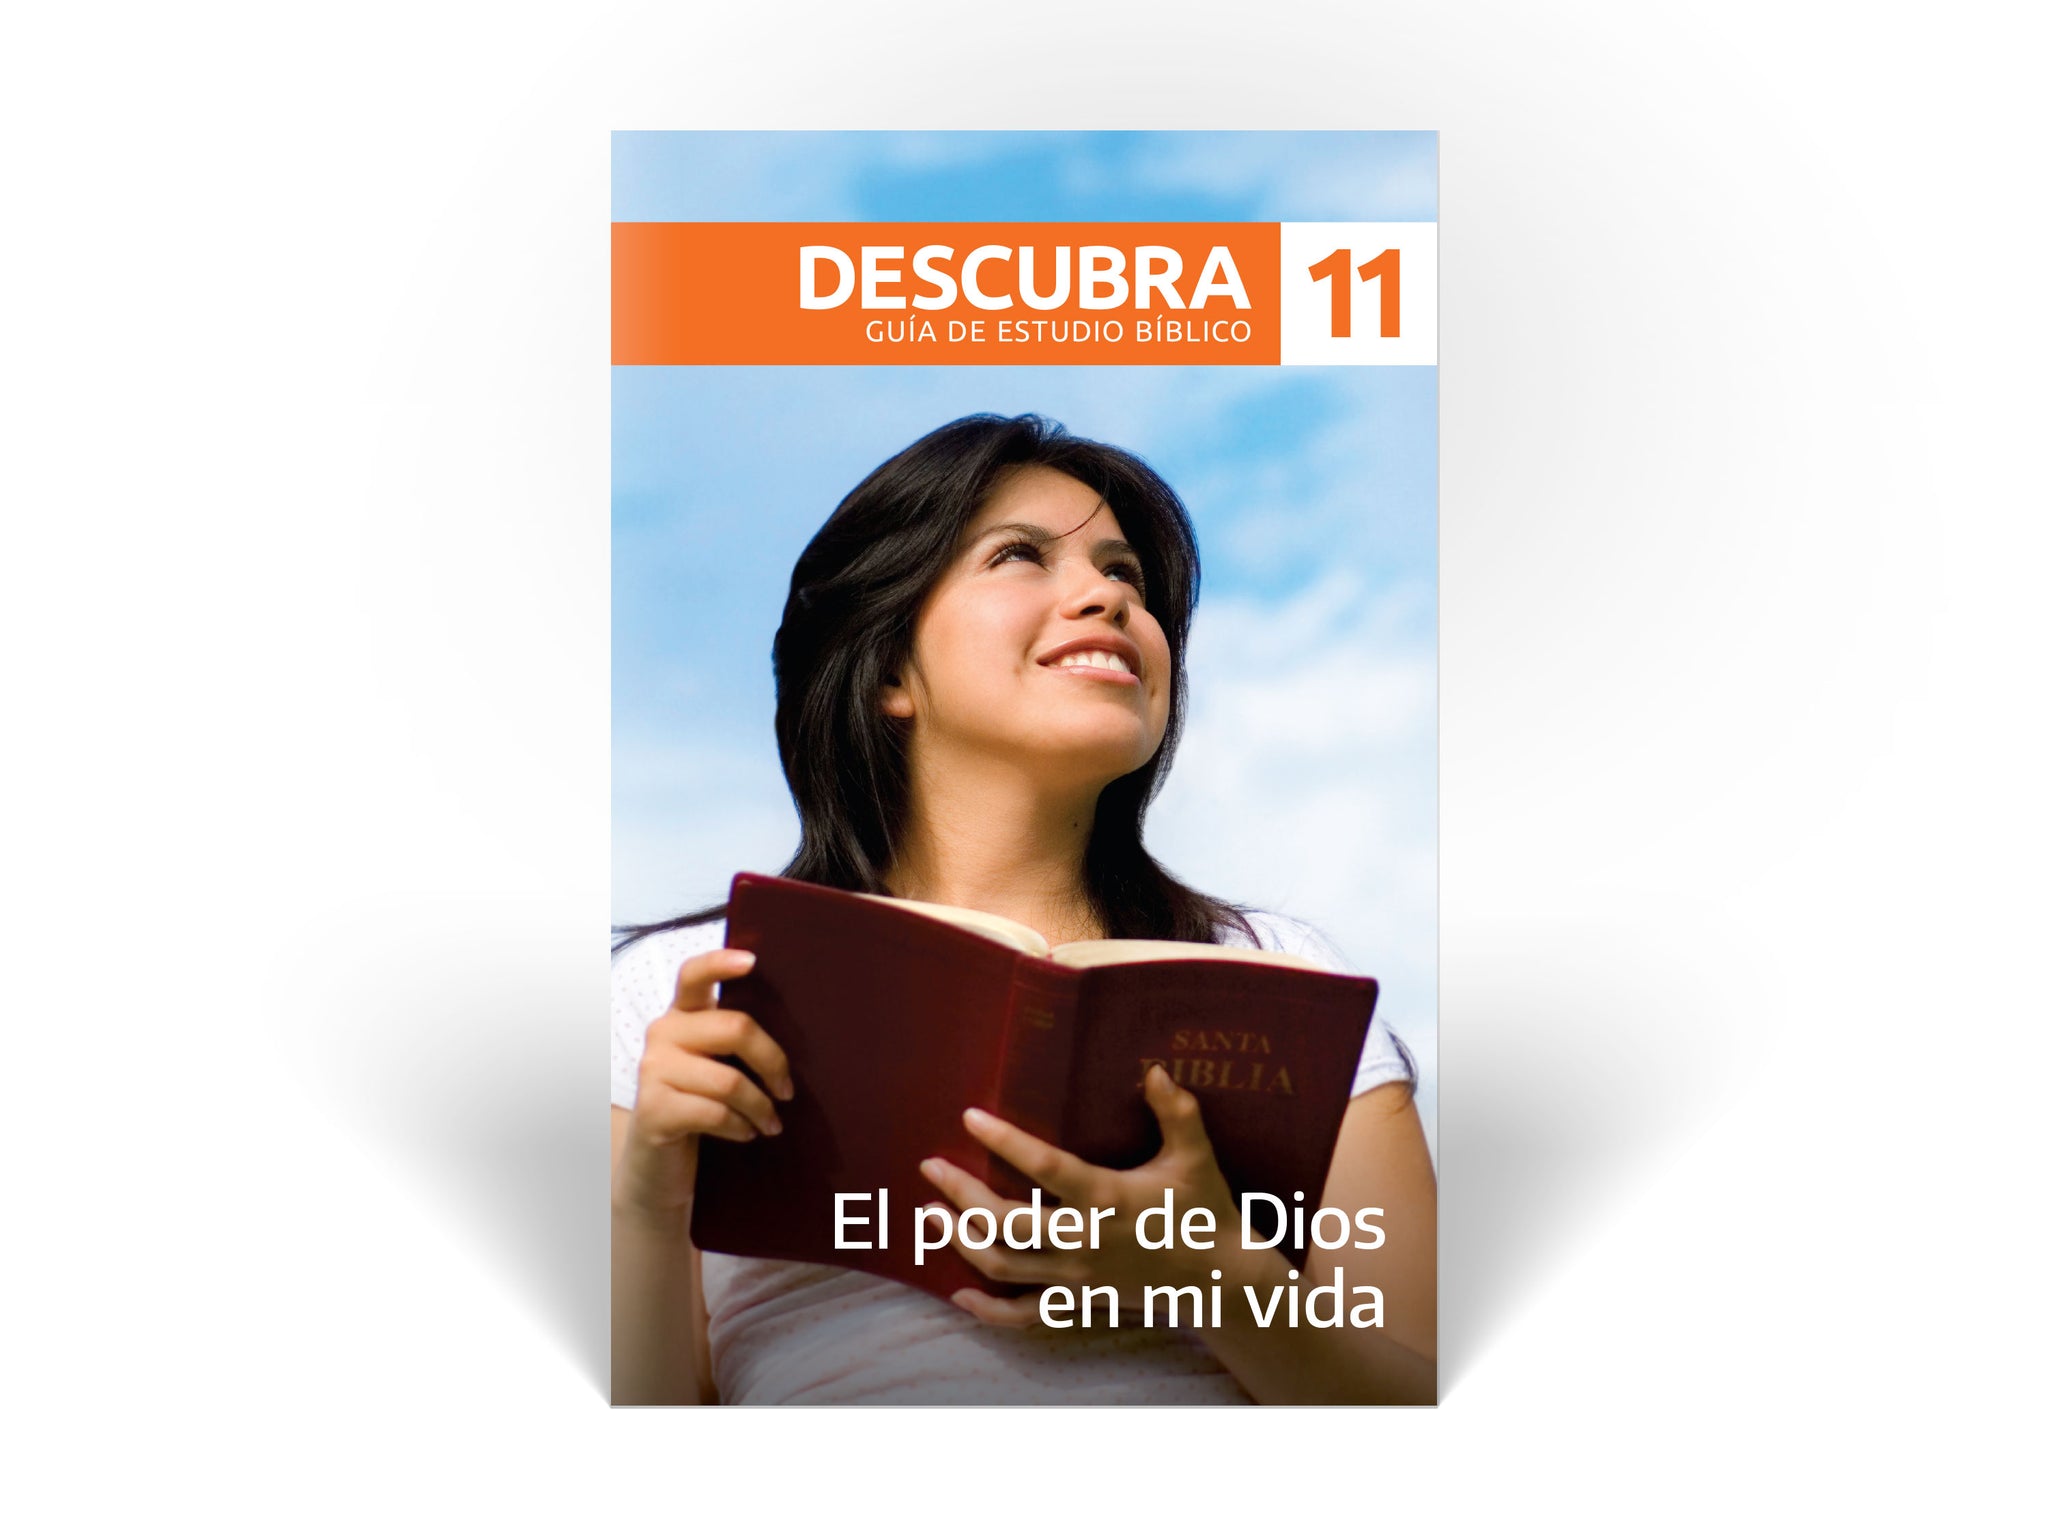 Descubra Guide #11 - El poder de Dios en mi vida